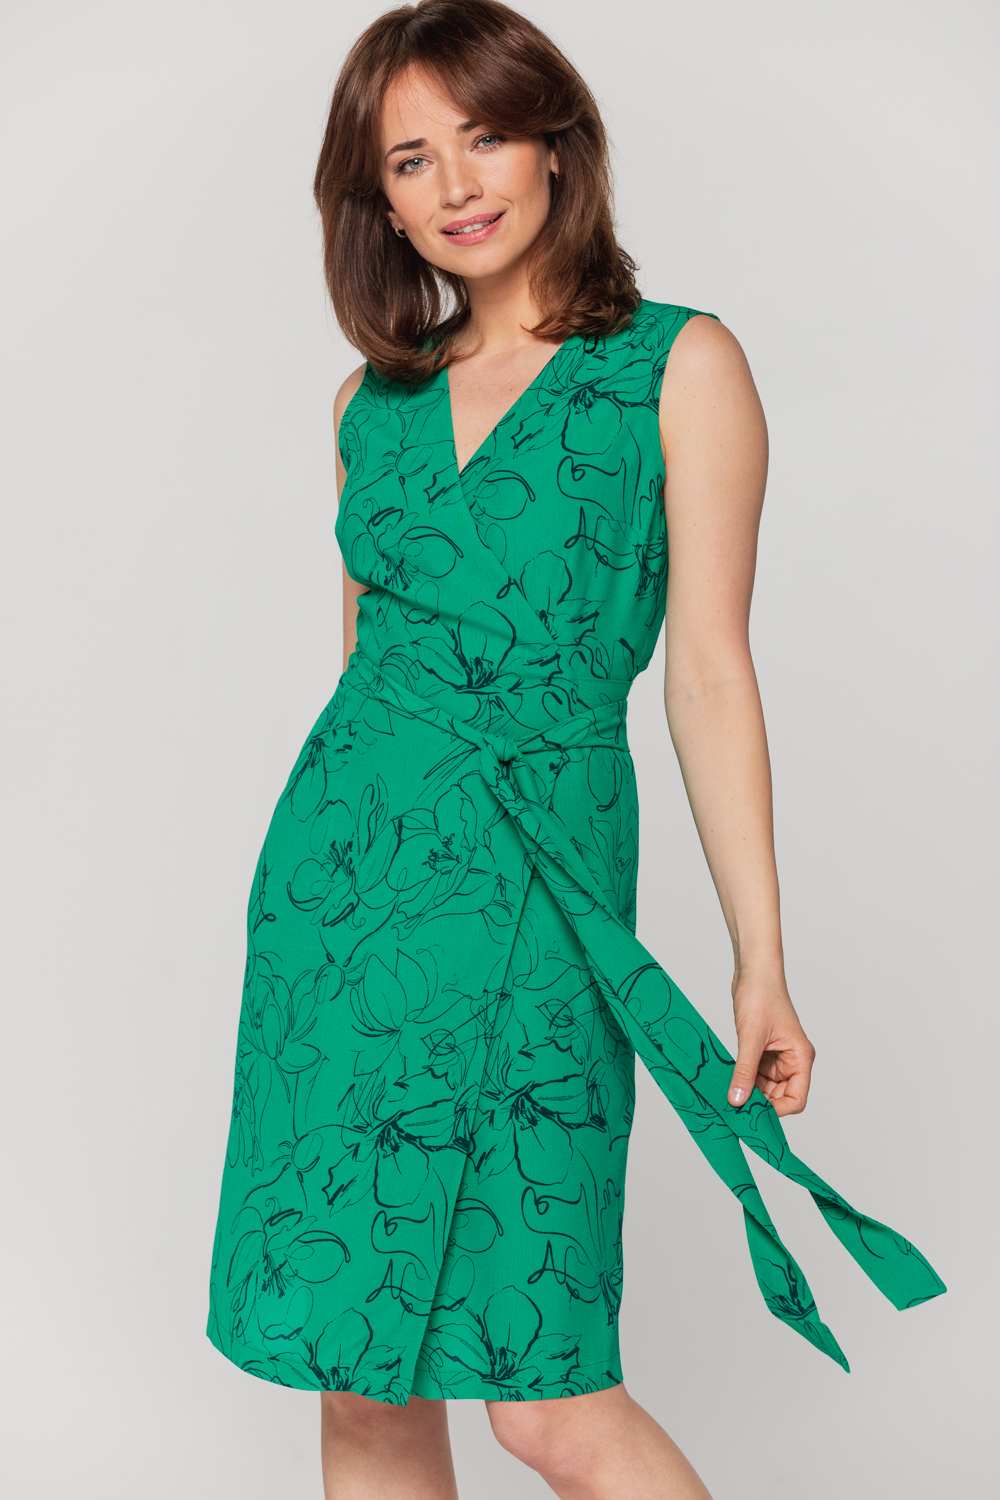 Kopertowa zielona sukienka bez rękawów od Bialcon